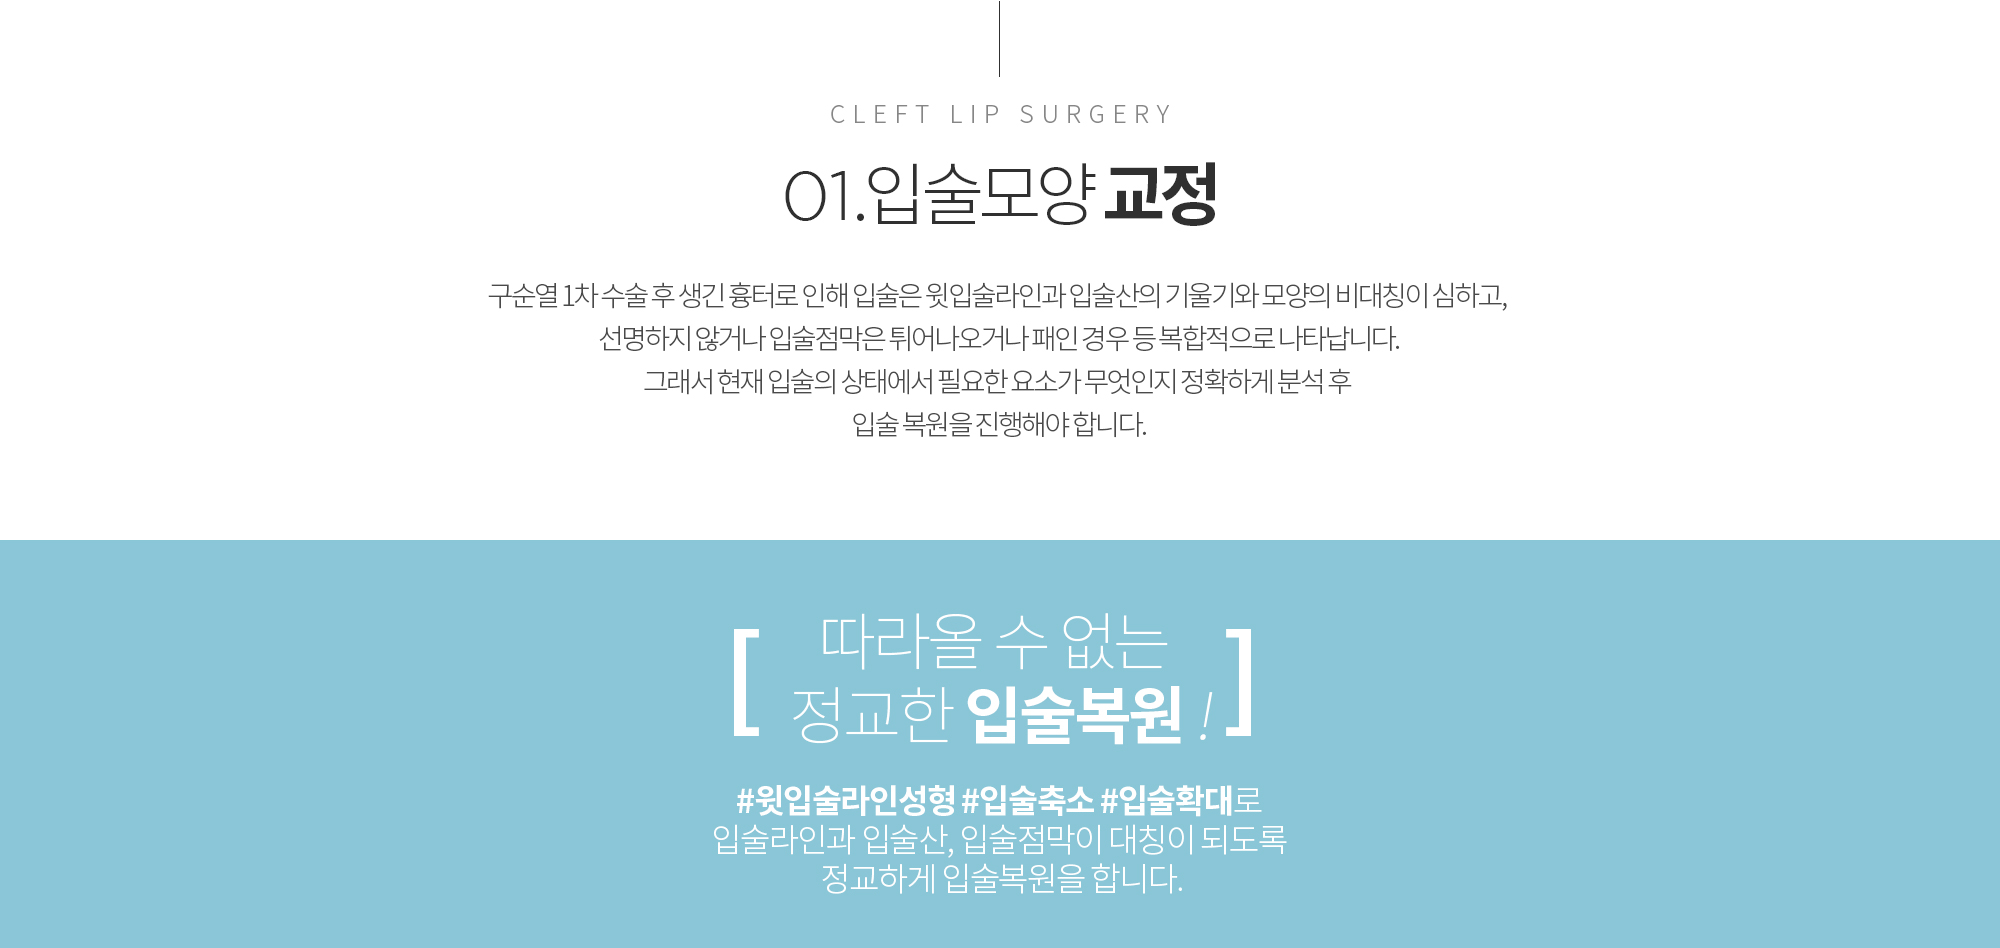 CLEFT LIP SURGERY 01.Լ 